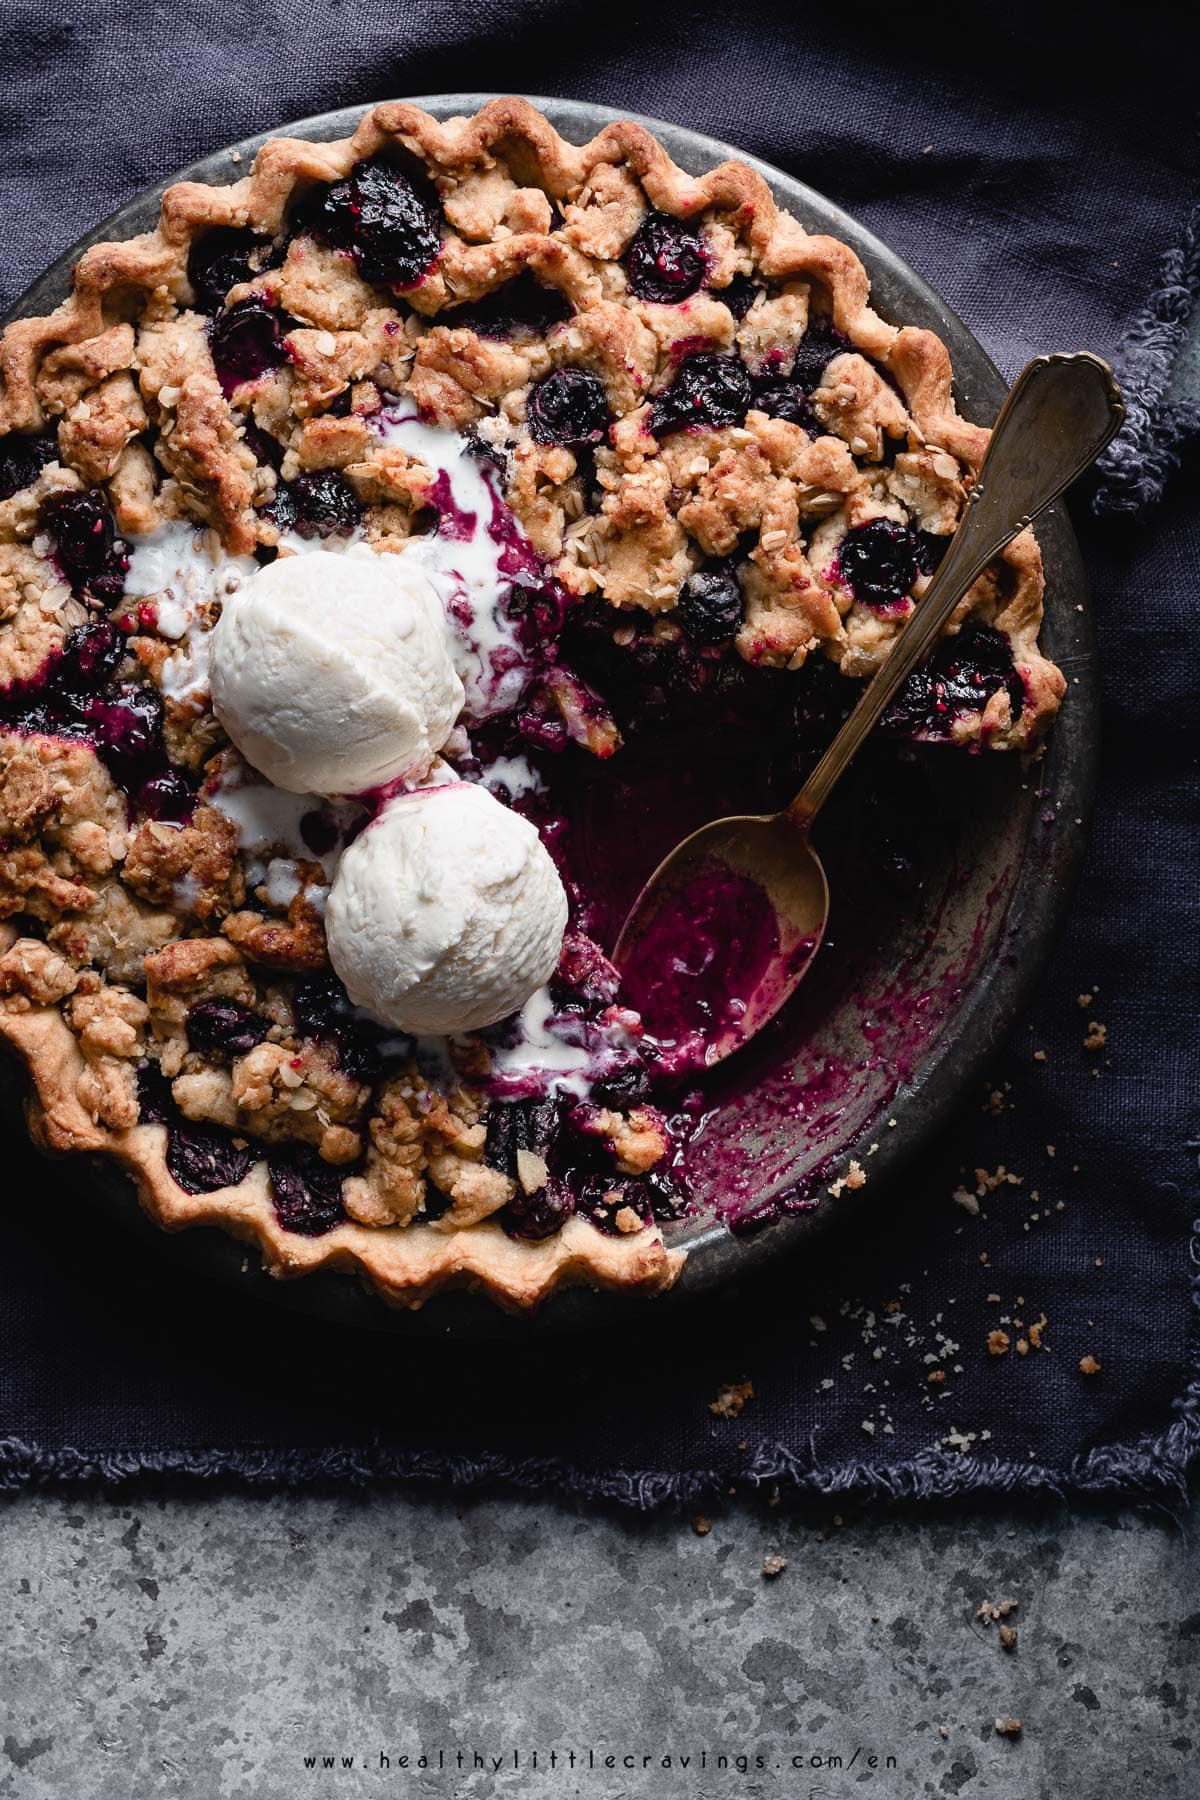 Blueberry crumble pie with vanilla ice cream on top.